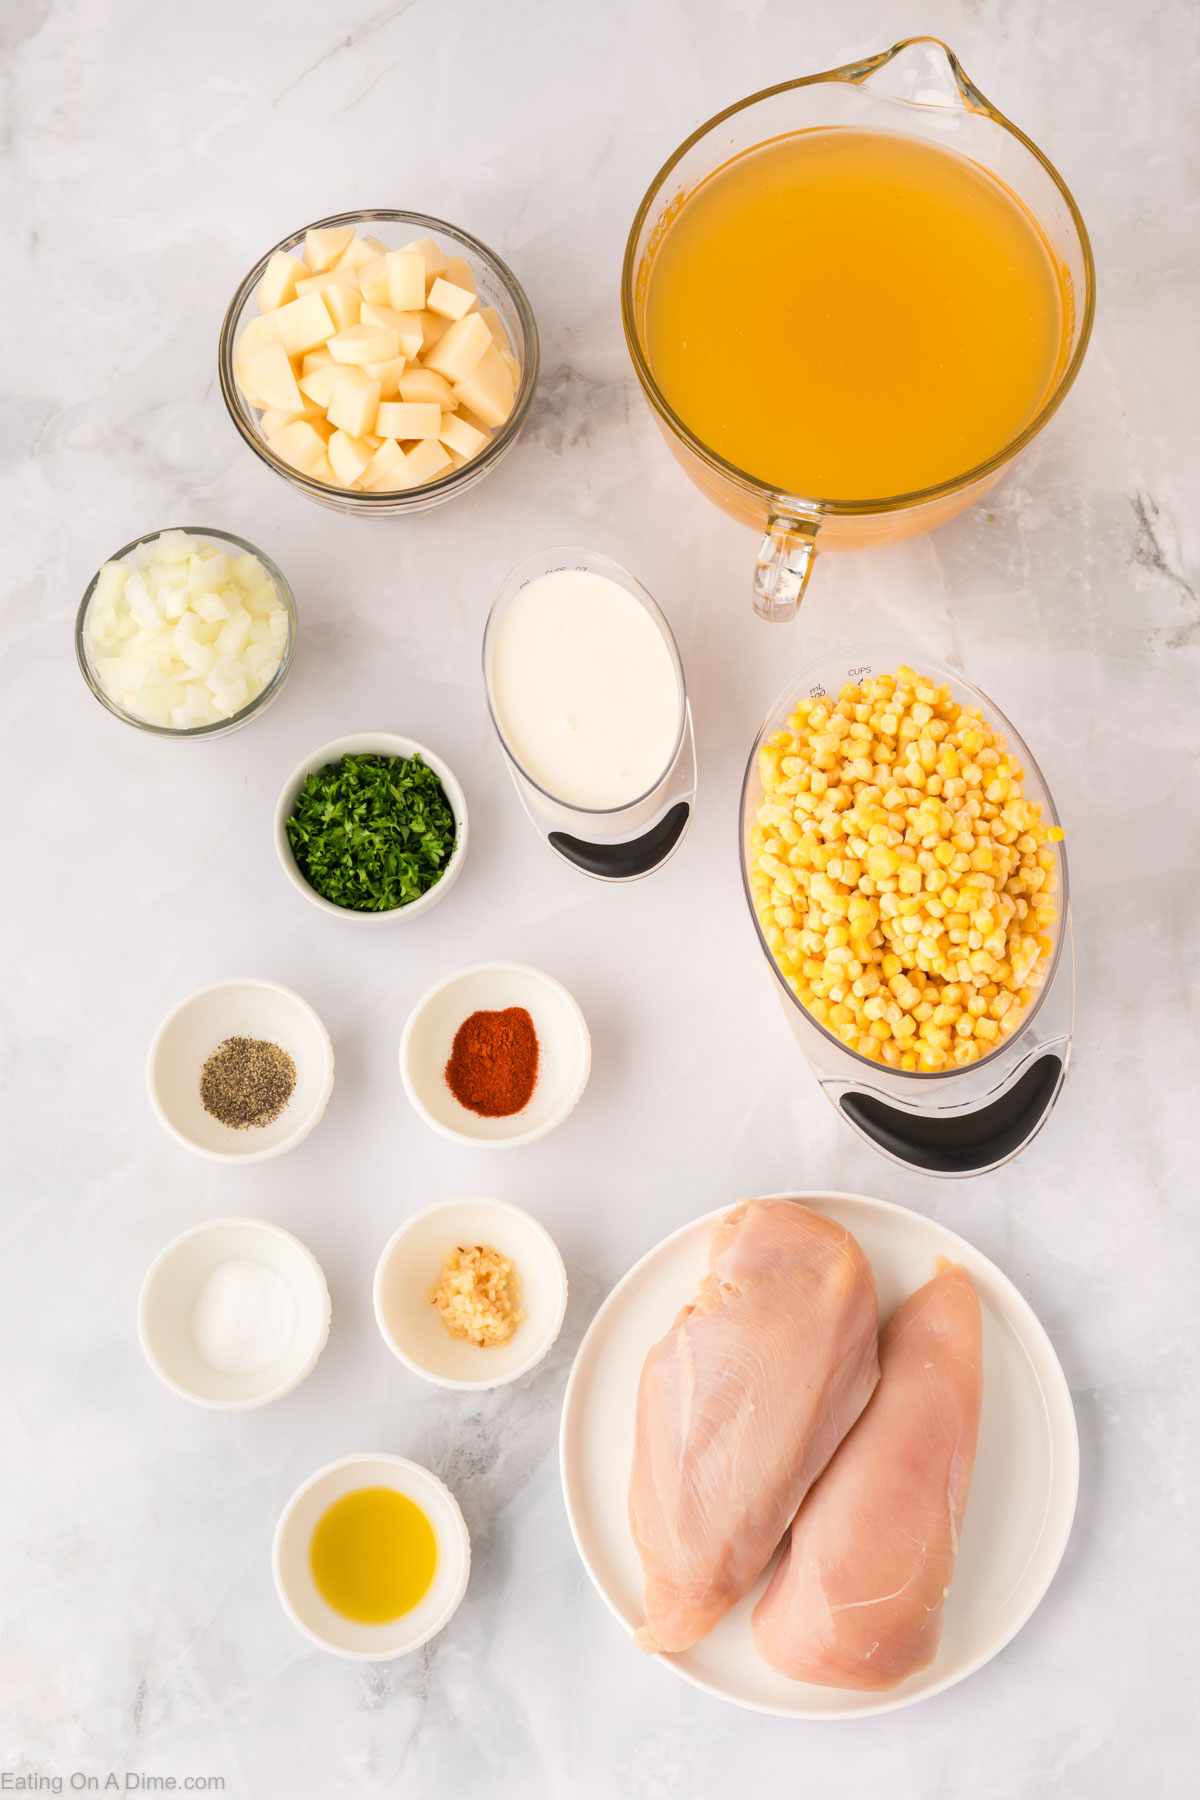 Chicken Corn Soup ingredients - chicken breast, oil, onion, garlic, chicken broth, corn, potatoes, paprika, salt, pepper, heavy cream, parsley